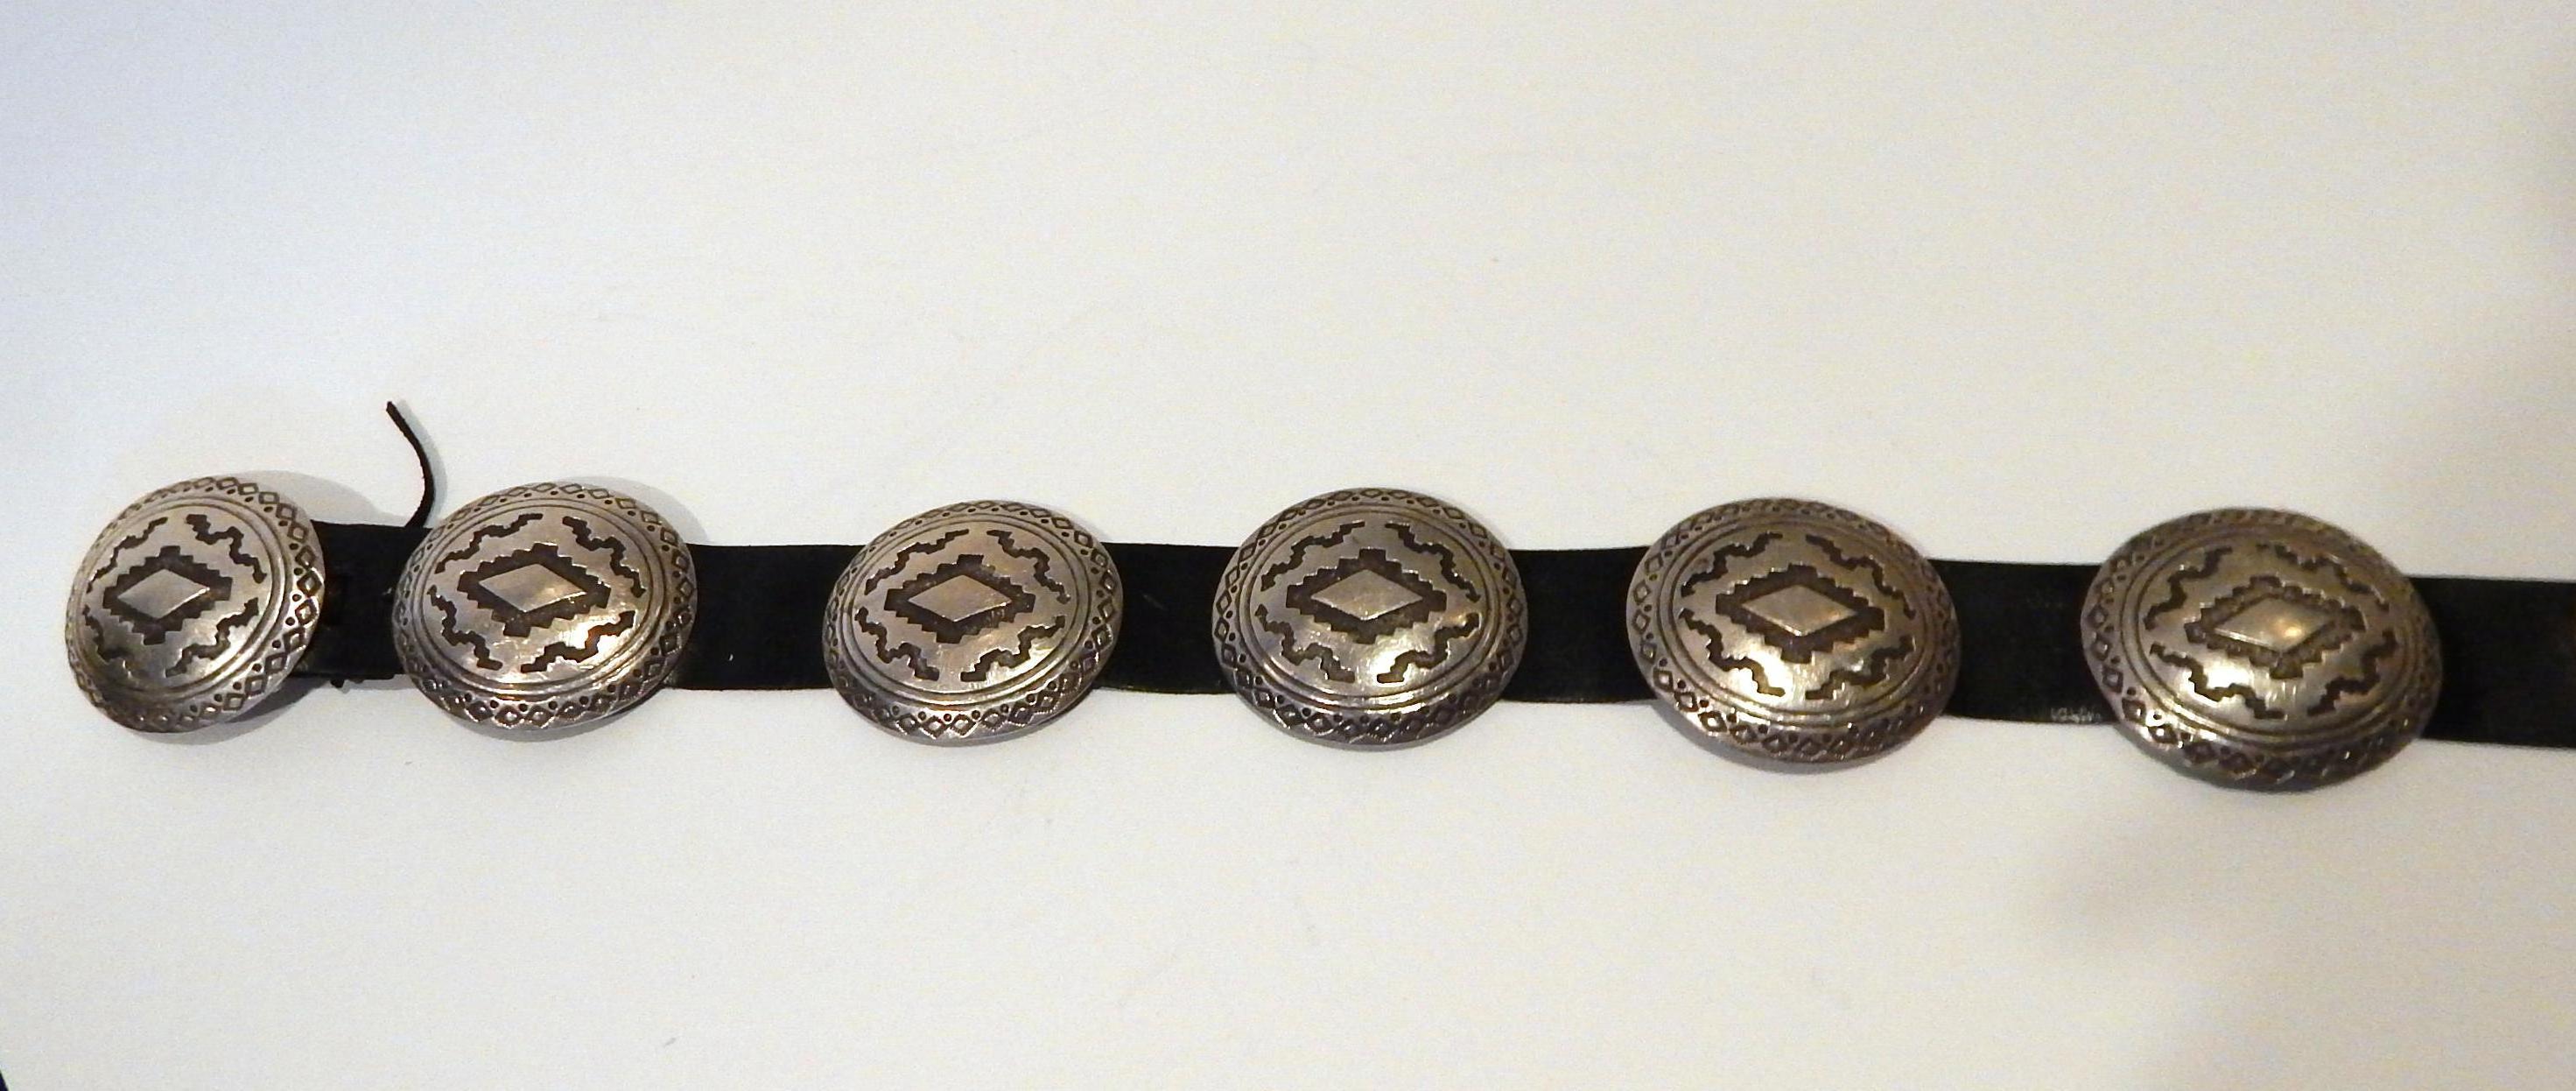 Cette ceinture Concho a été créée par l'orfèvre navajo James Shay.
Il comporte 8 conchos en argent sterling, y compris la boucle, avec un travail d'estampage à la main.
La boucle est clairement poinçonnée 